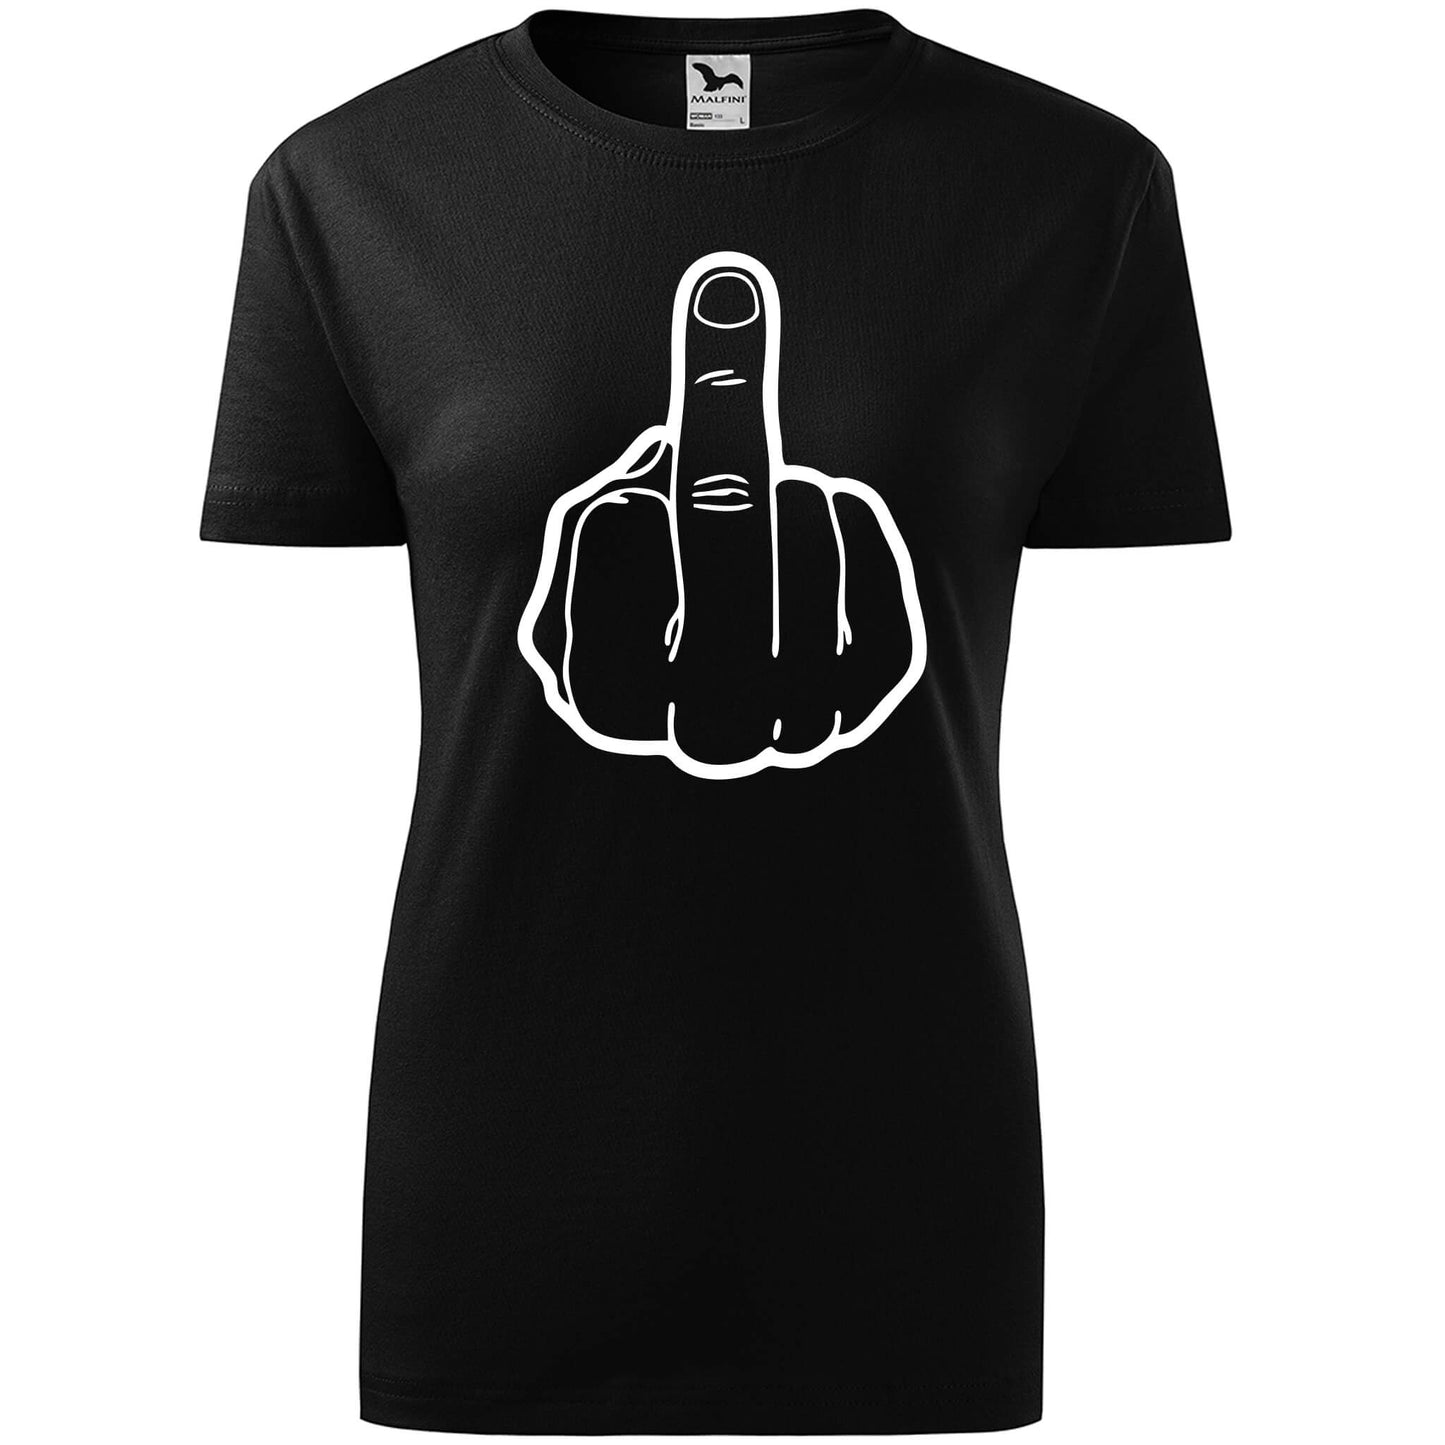 T-shirt - Fuck off - rvdesignprint